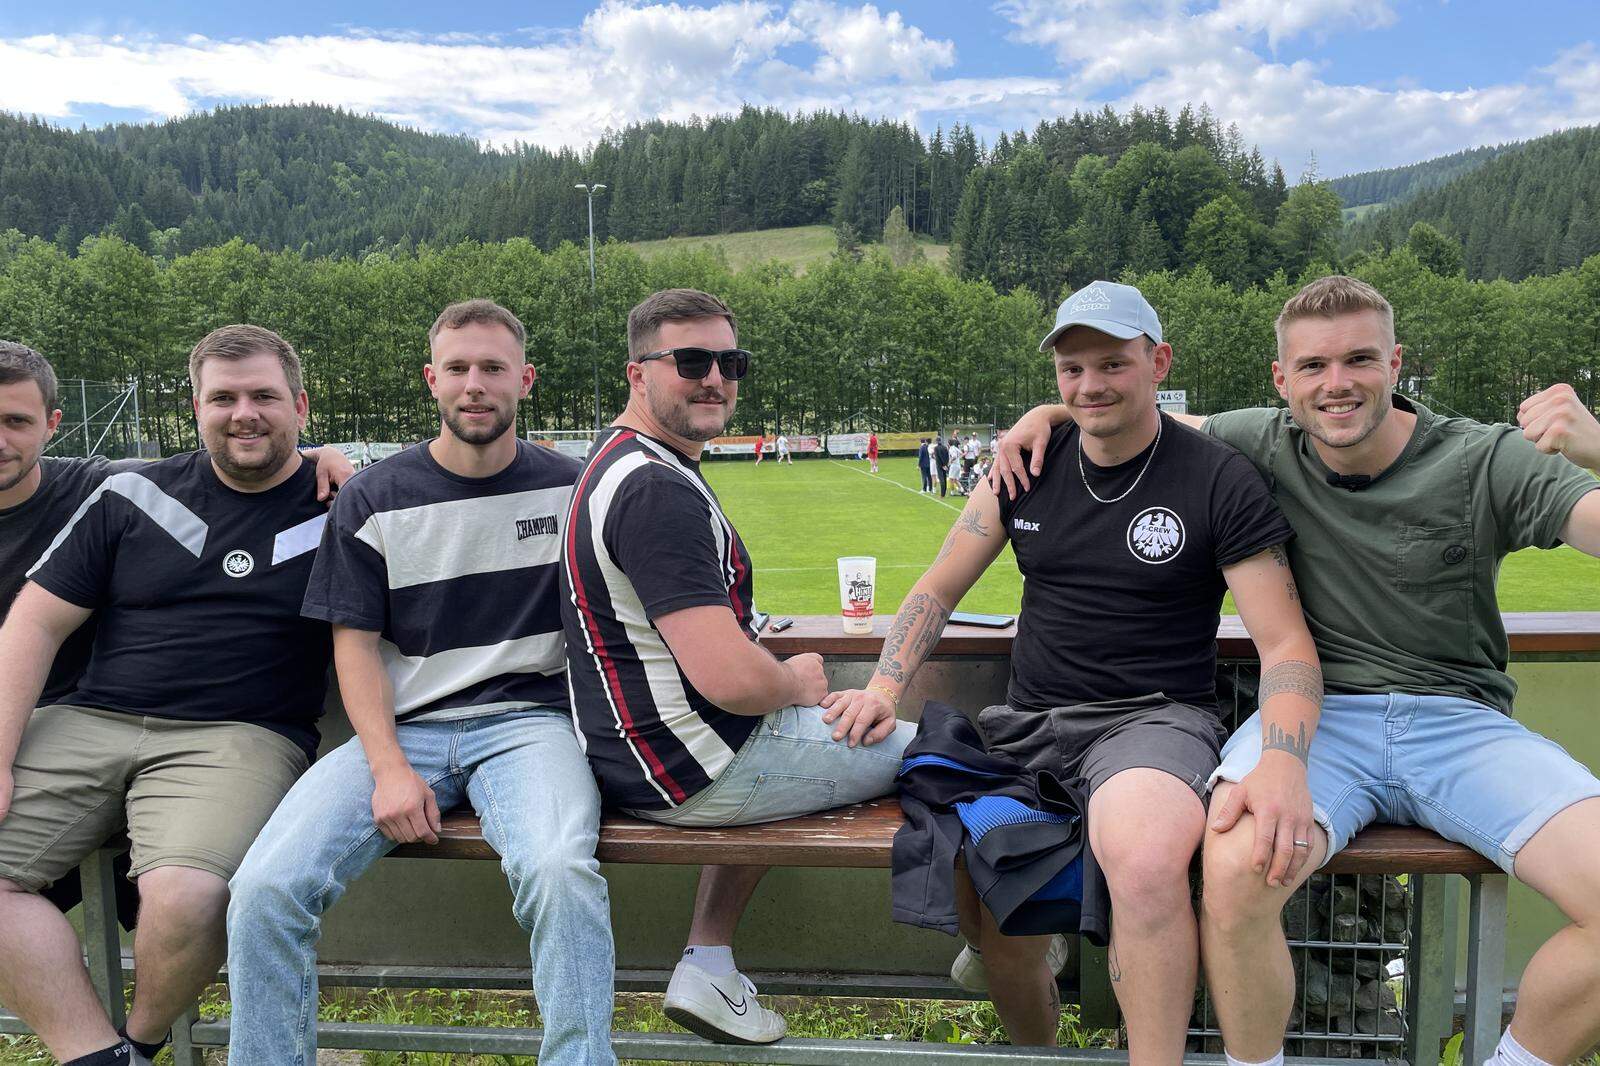 Die deutschen Hinti-Cup-Teilnehmer sorgen in Sirnitz wieder für Stimmung